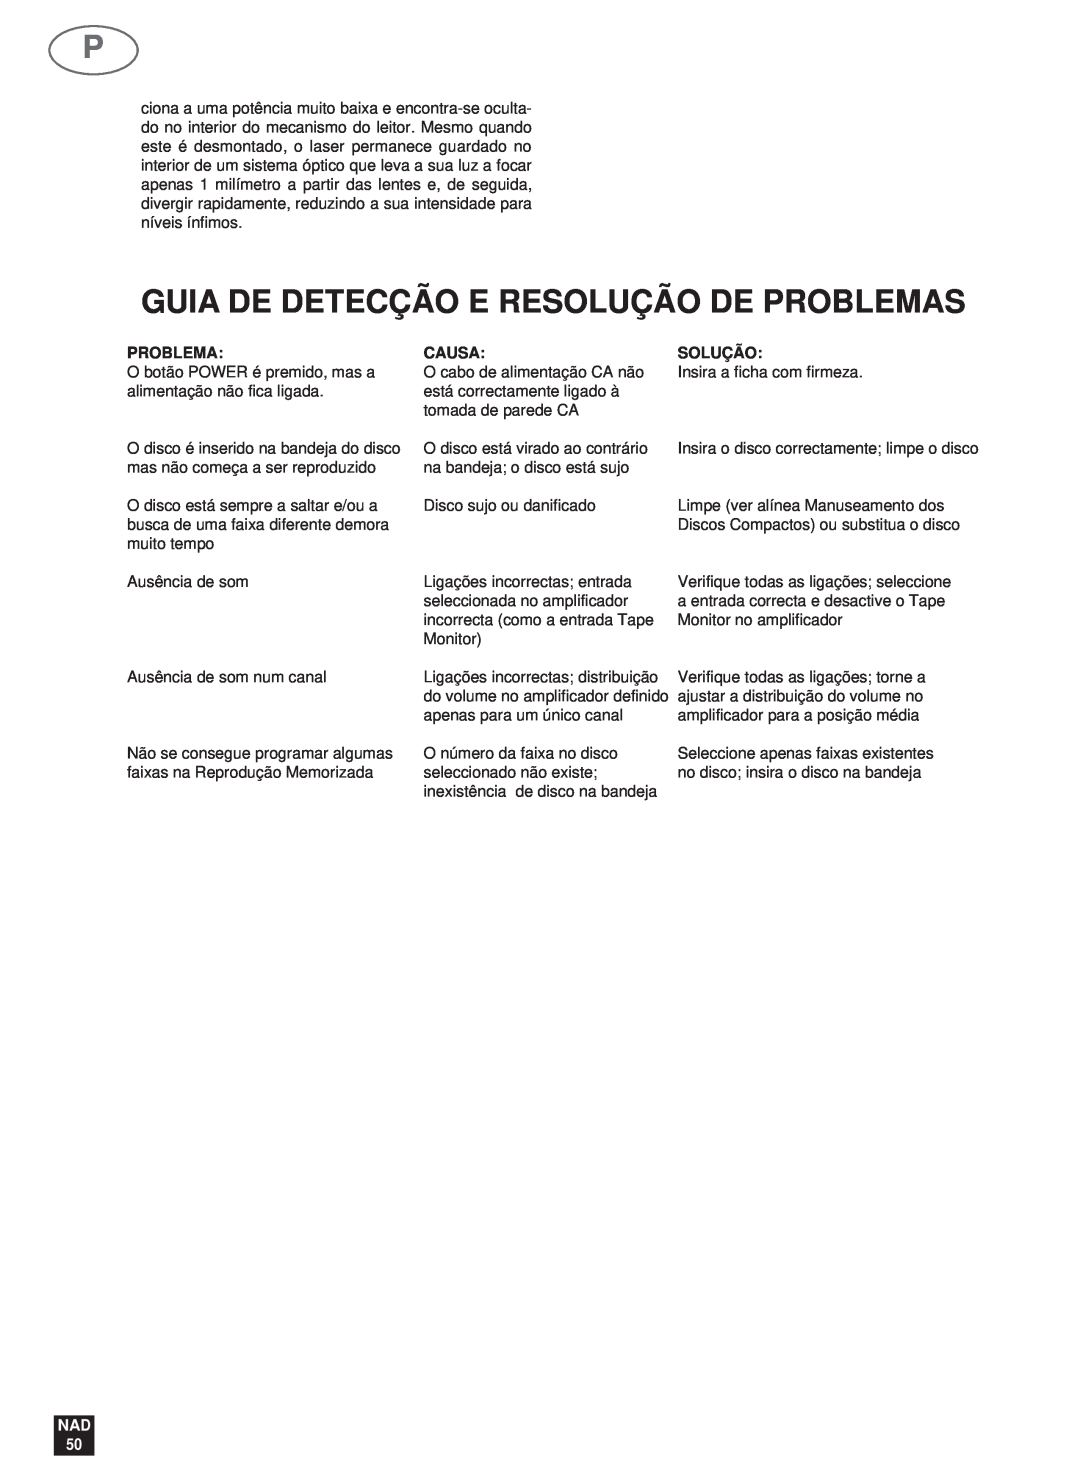 NAD 523 owner manual Guia De Detecção E Resolução De Problemas, Causa, Solução, NAD 50 